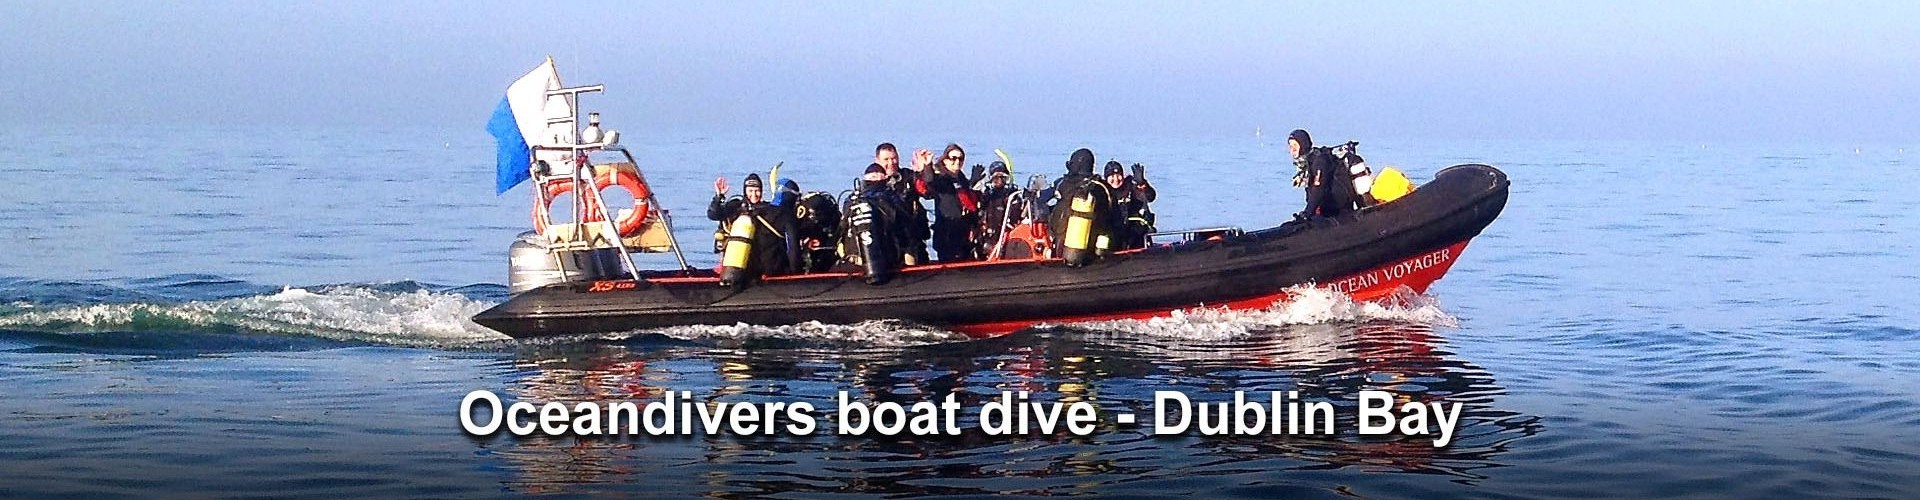 Boat dives Dublin Bay